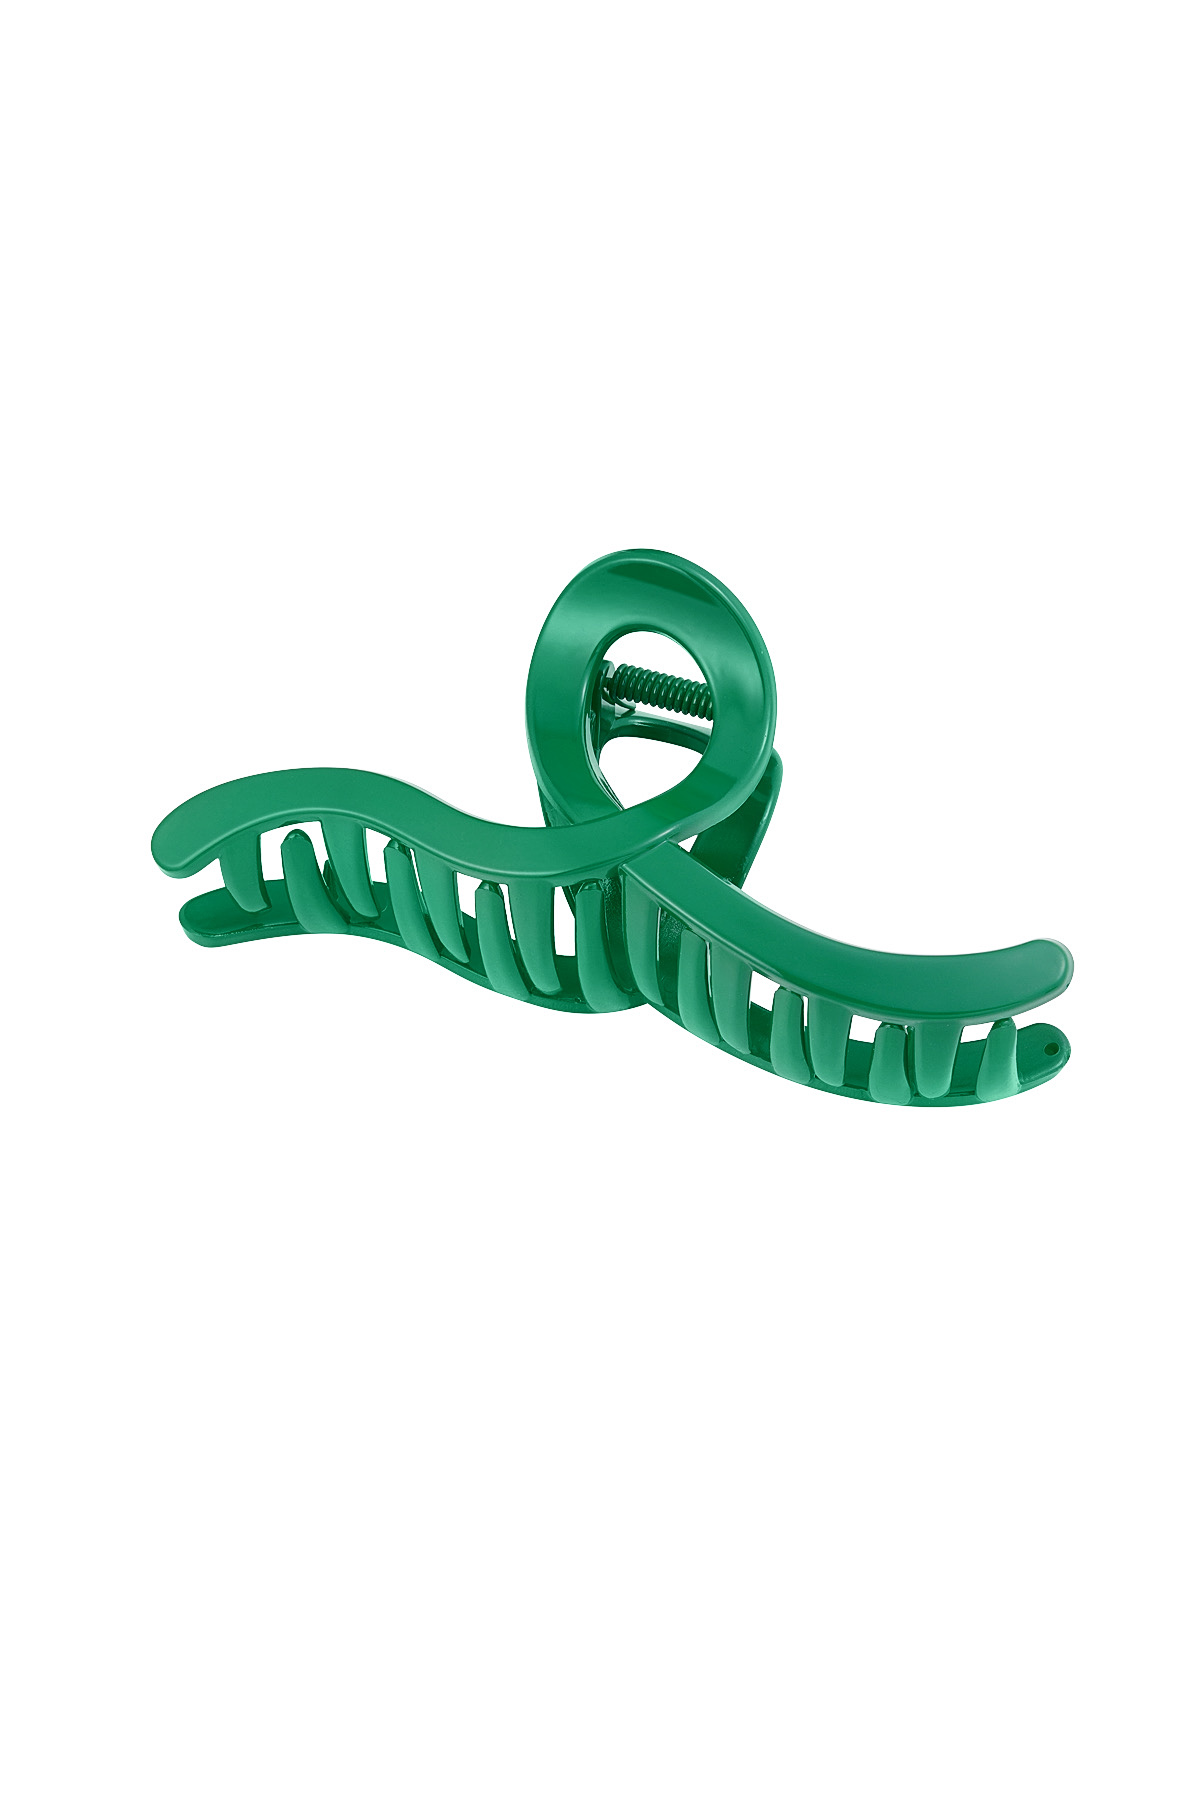 Hair clip swing - green h5 